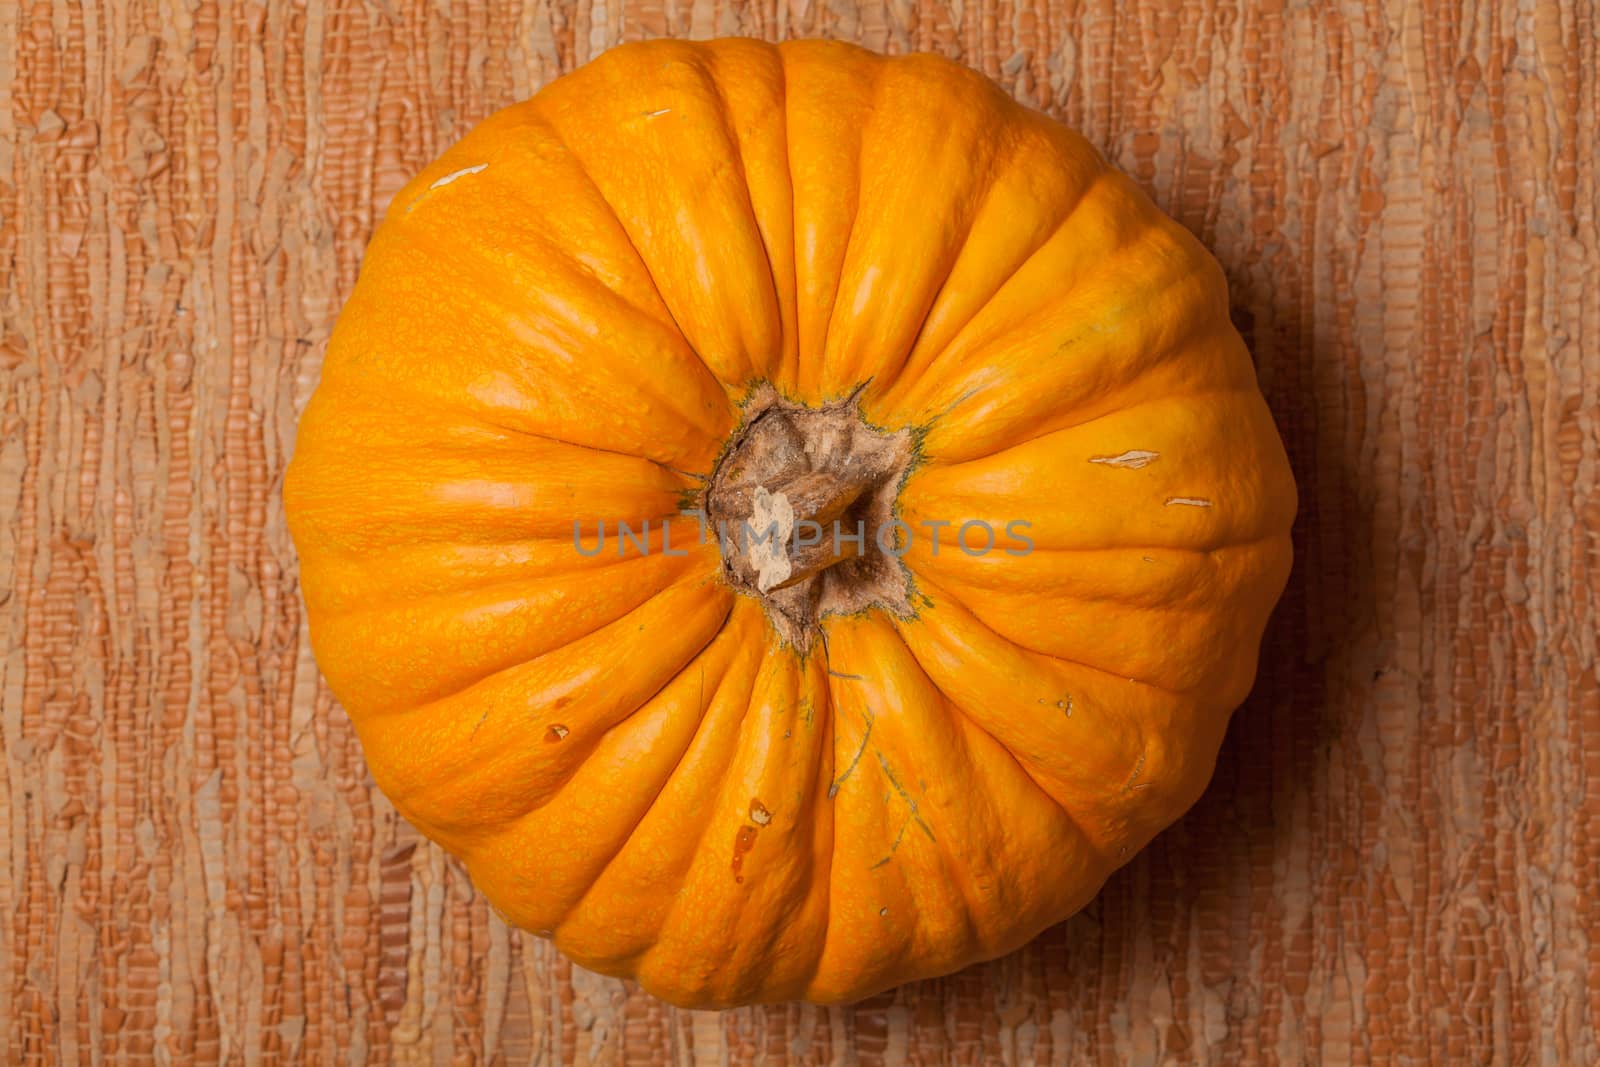 Autumn pumpkin by Portokalis